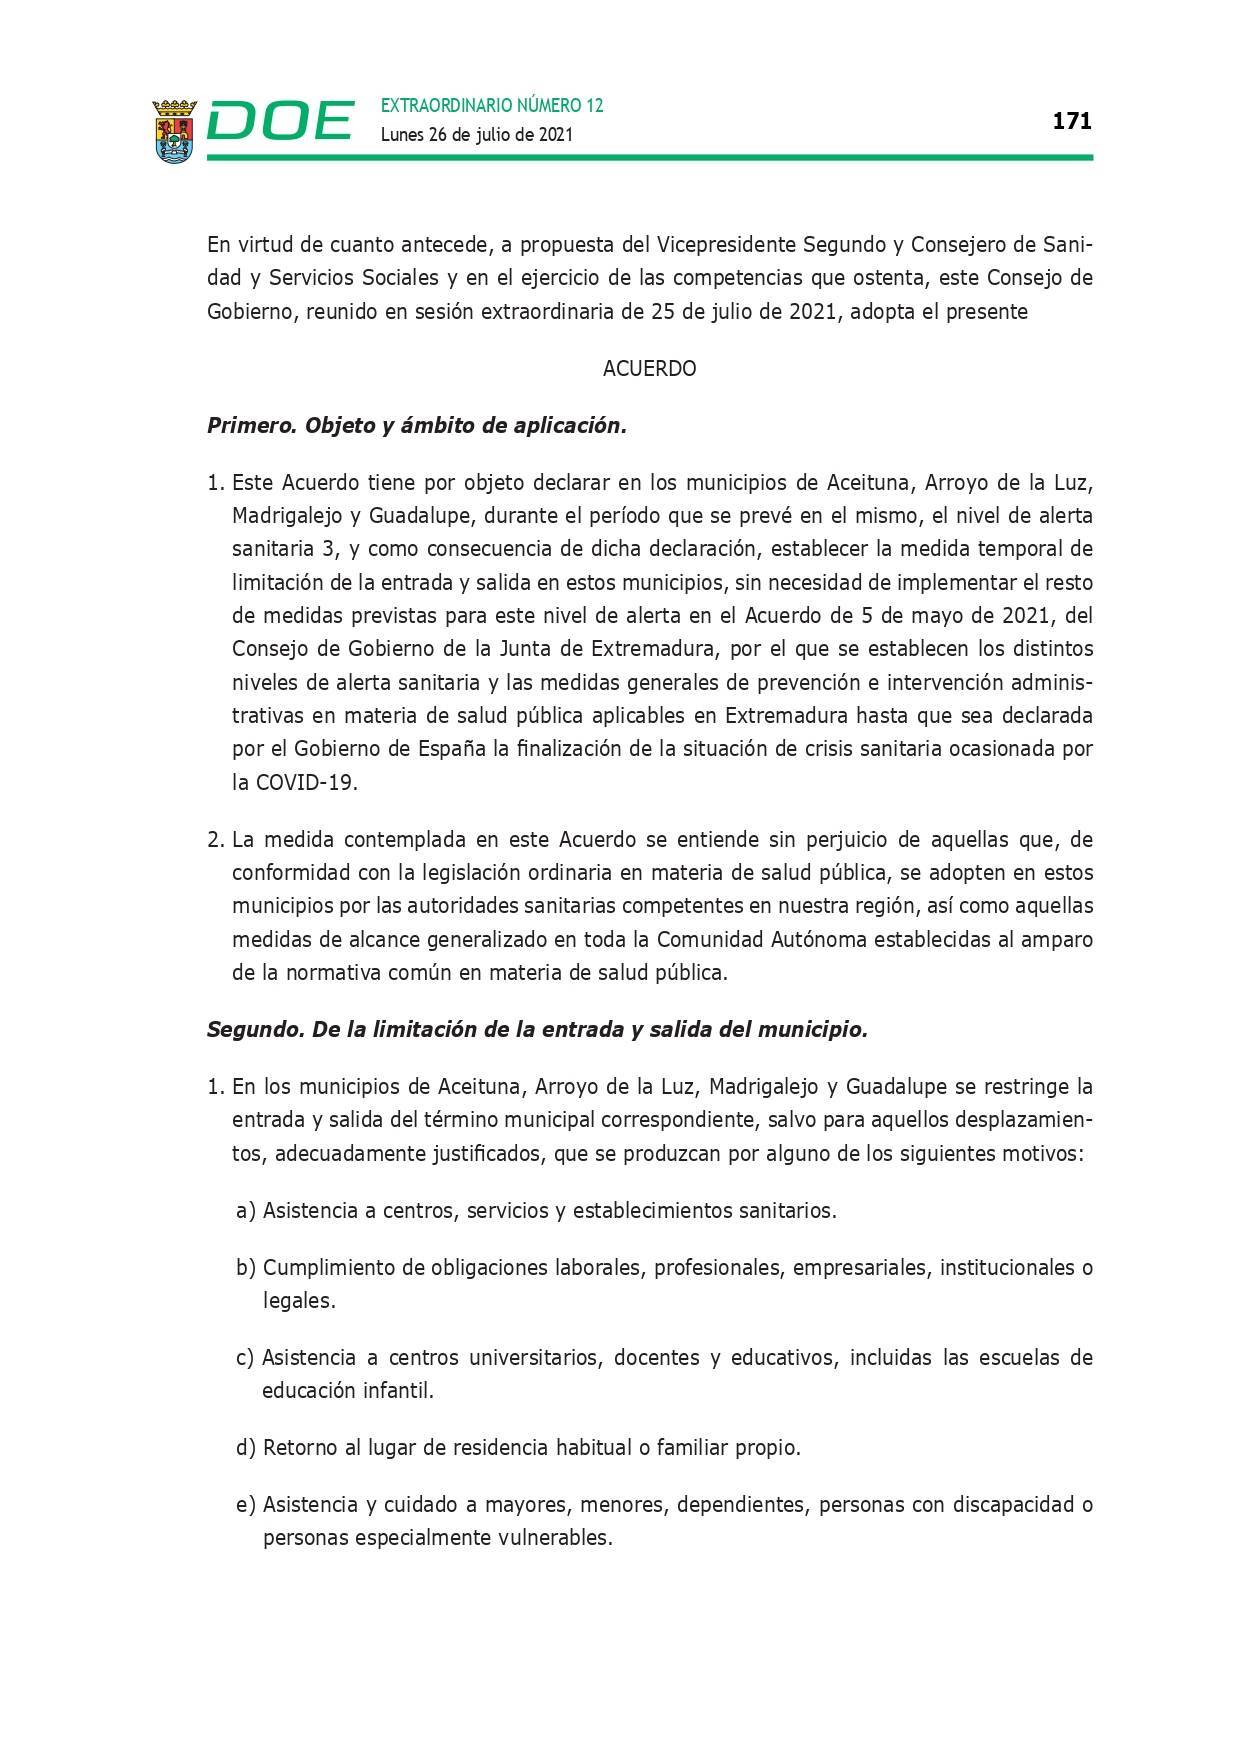 Restricción de la entrada y salida por COVID-19 (julio 2021) - Guadalupe (Cáceres) 17